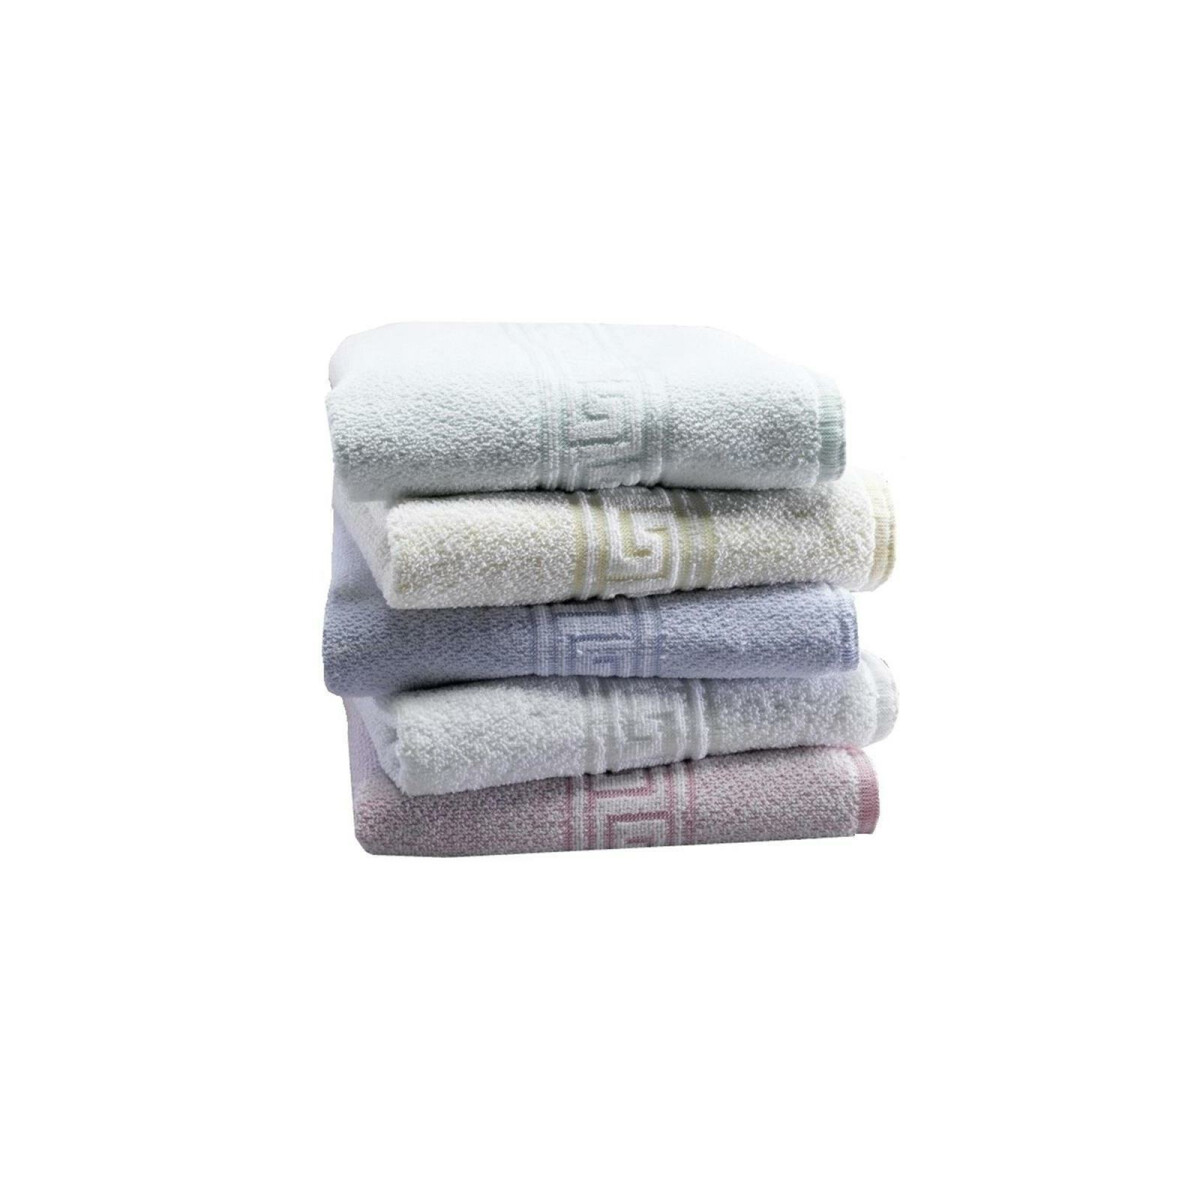 50 x 85 cm 700 g/mq Confezione da 4 Pezzi Asciugamani in Cotone Egiziano Spesso e Assorbente Colore: Bianco Gaveno Cavailia 